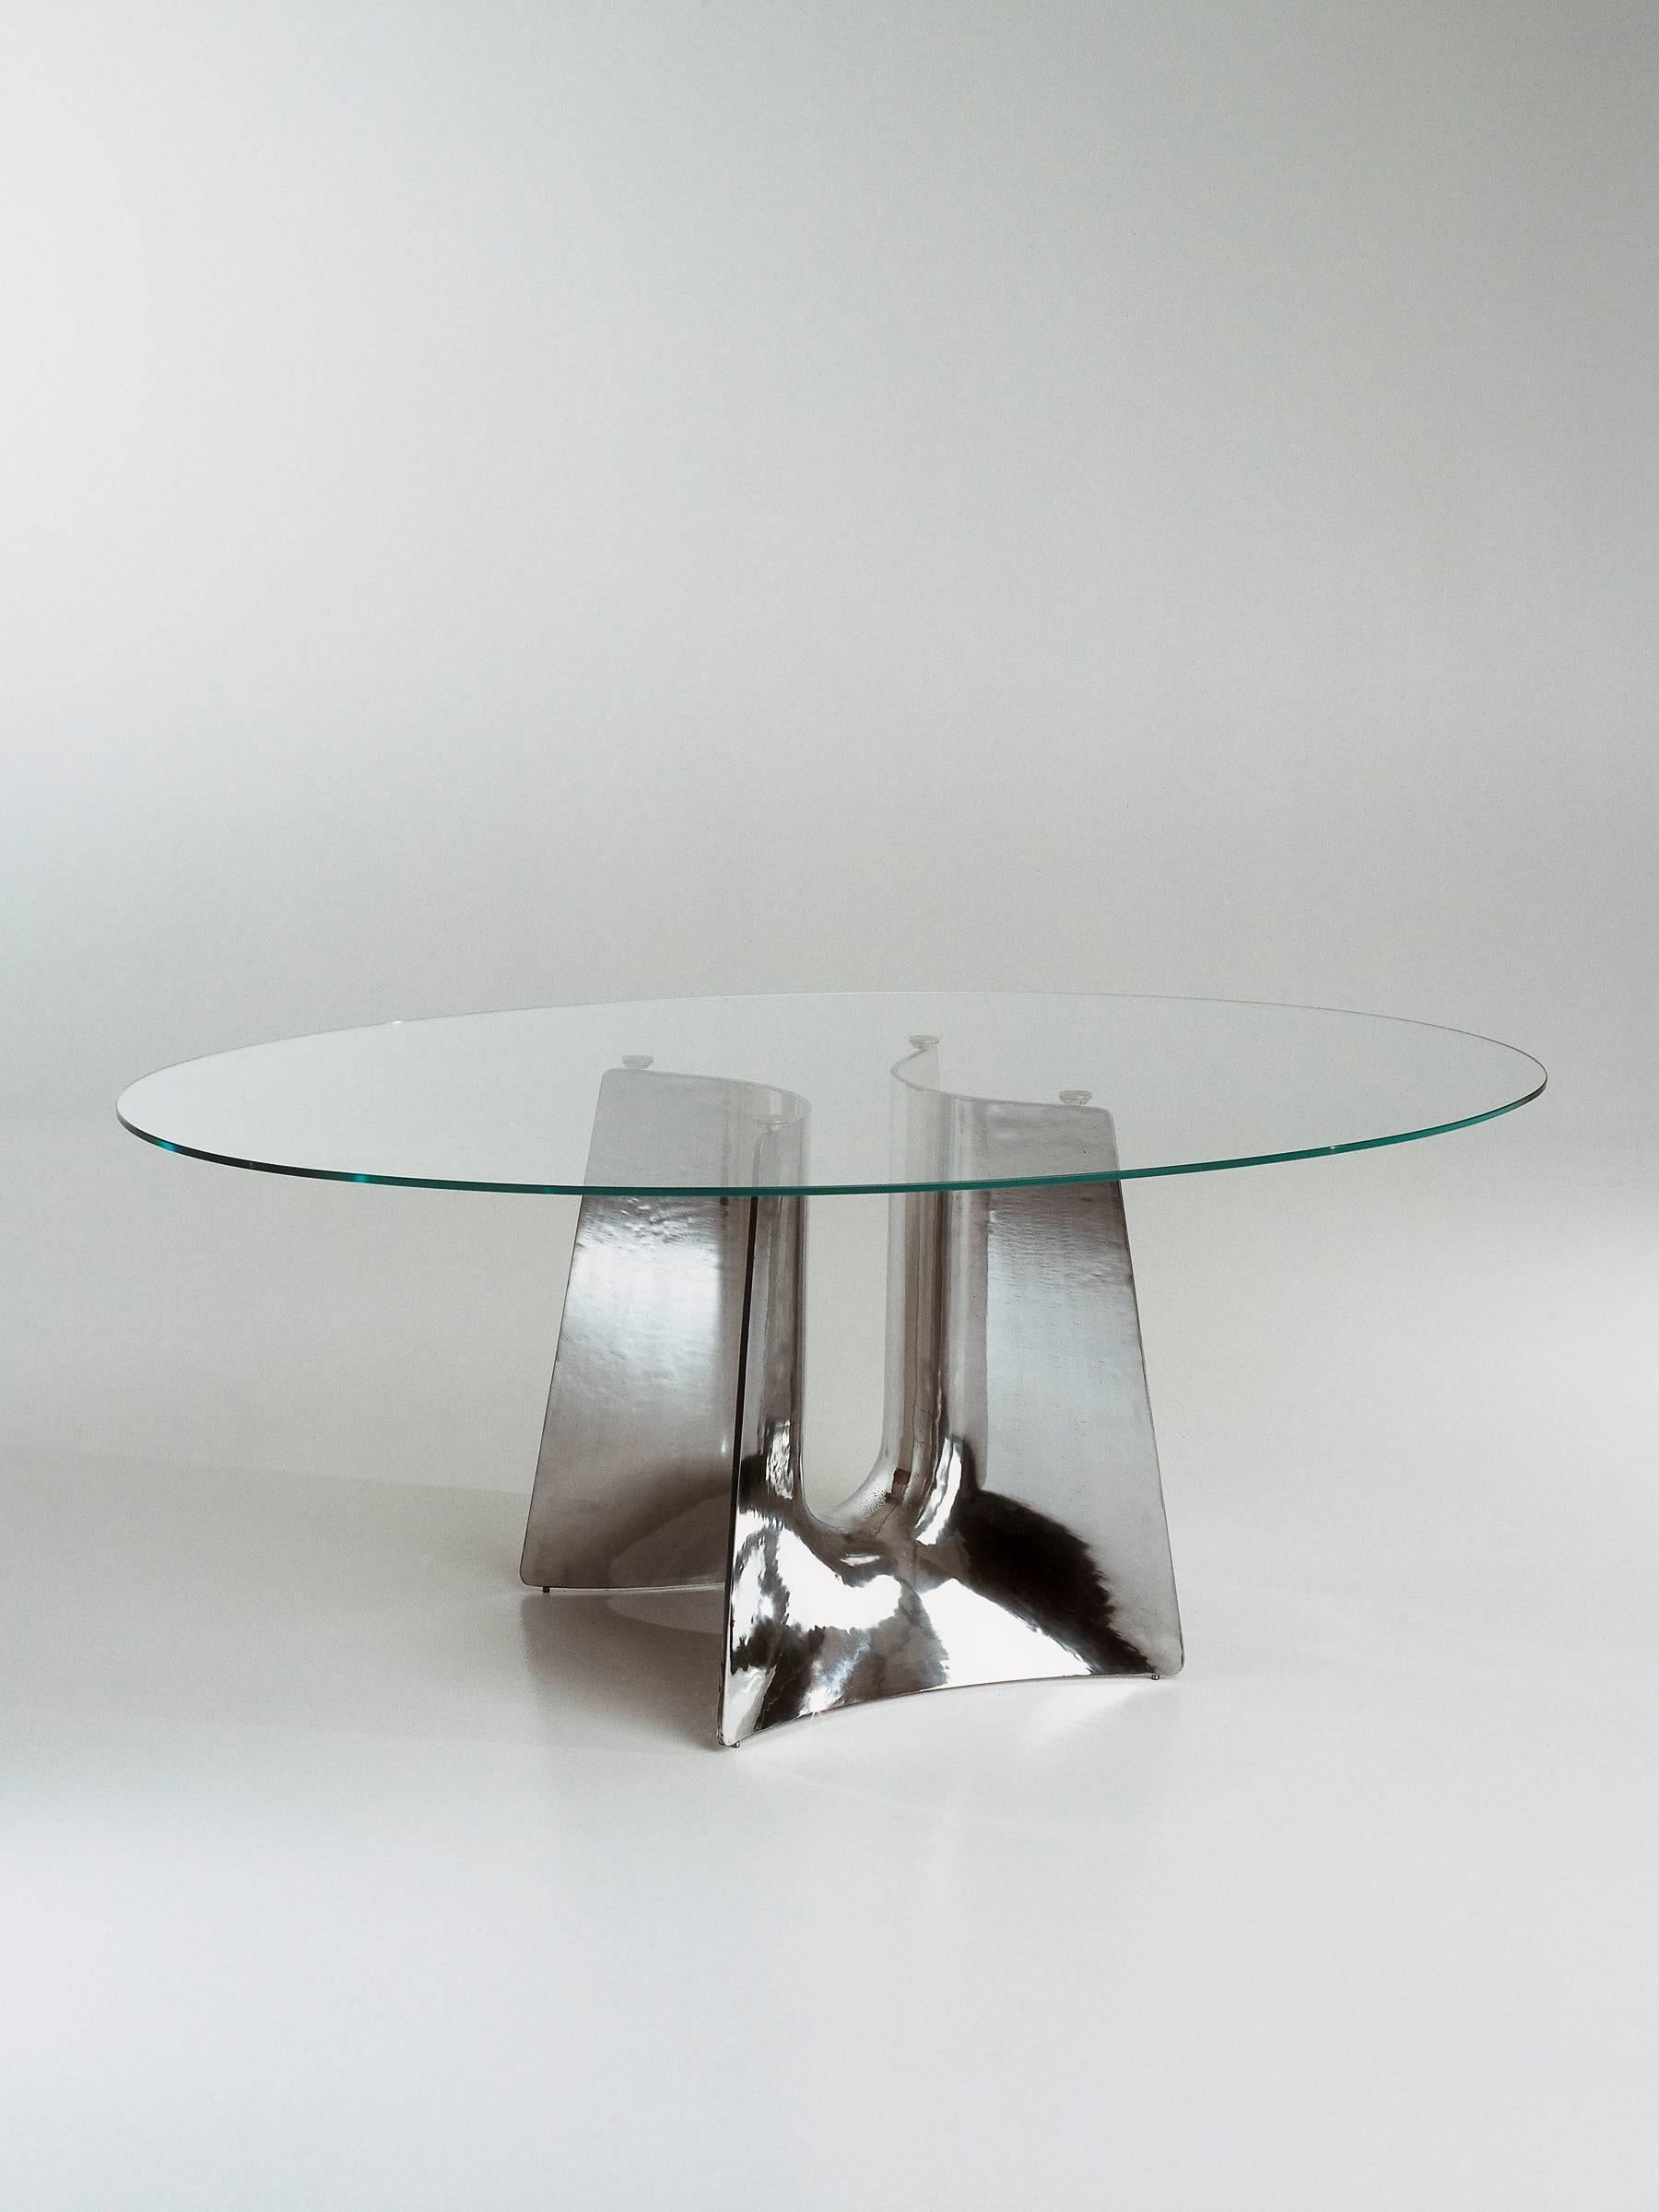 Die Form des Bentz-Tischfußes leitet sich von einem einfachen Profil ab, das entlang einer nach unten und oben gerichteten Bahn geschwungen ist. Auf diese Weise entsteht ein luftiger und skulpturaler Mittelpunkt mit den funktionalen Eigenschaften